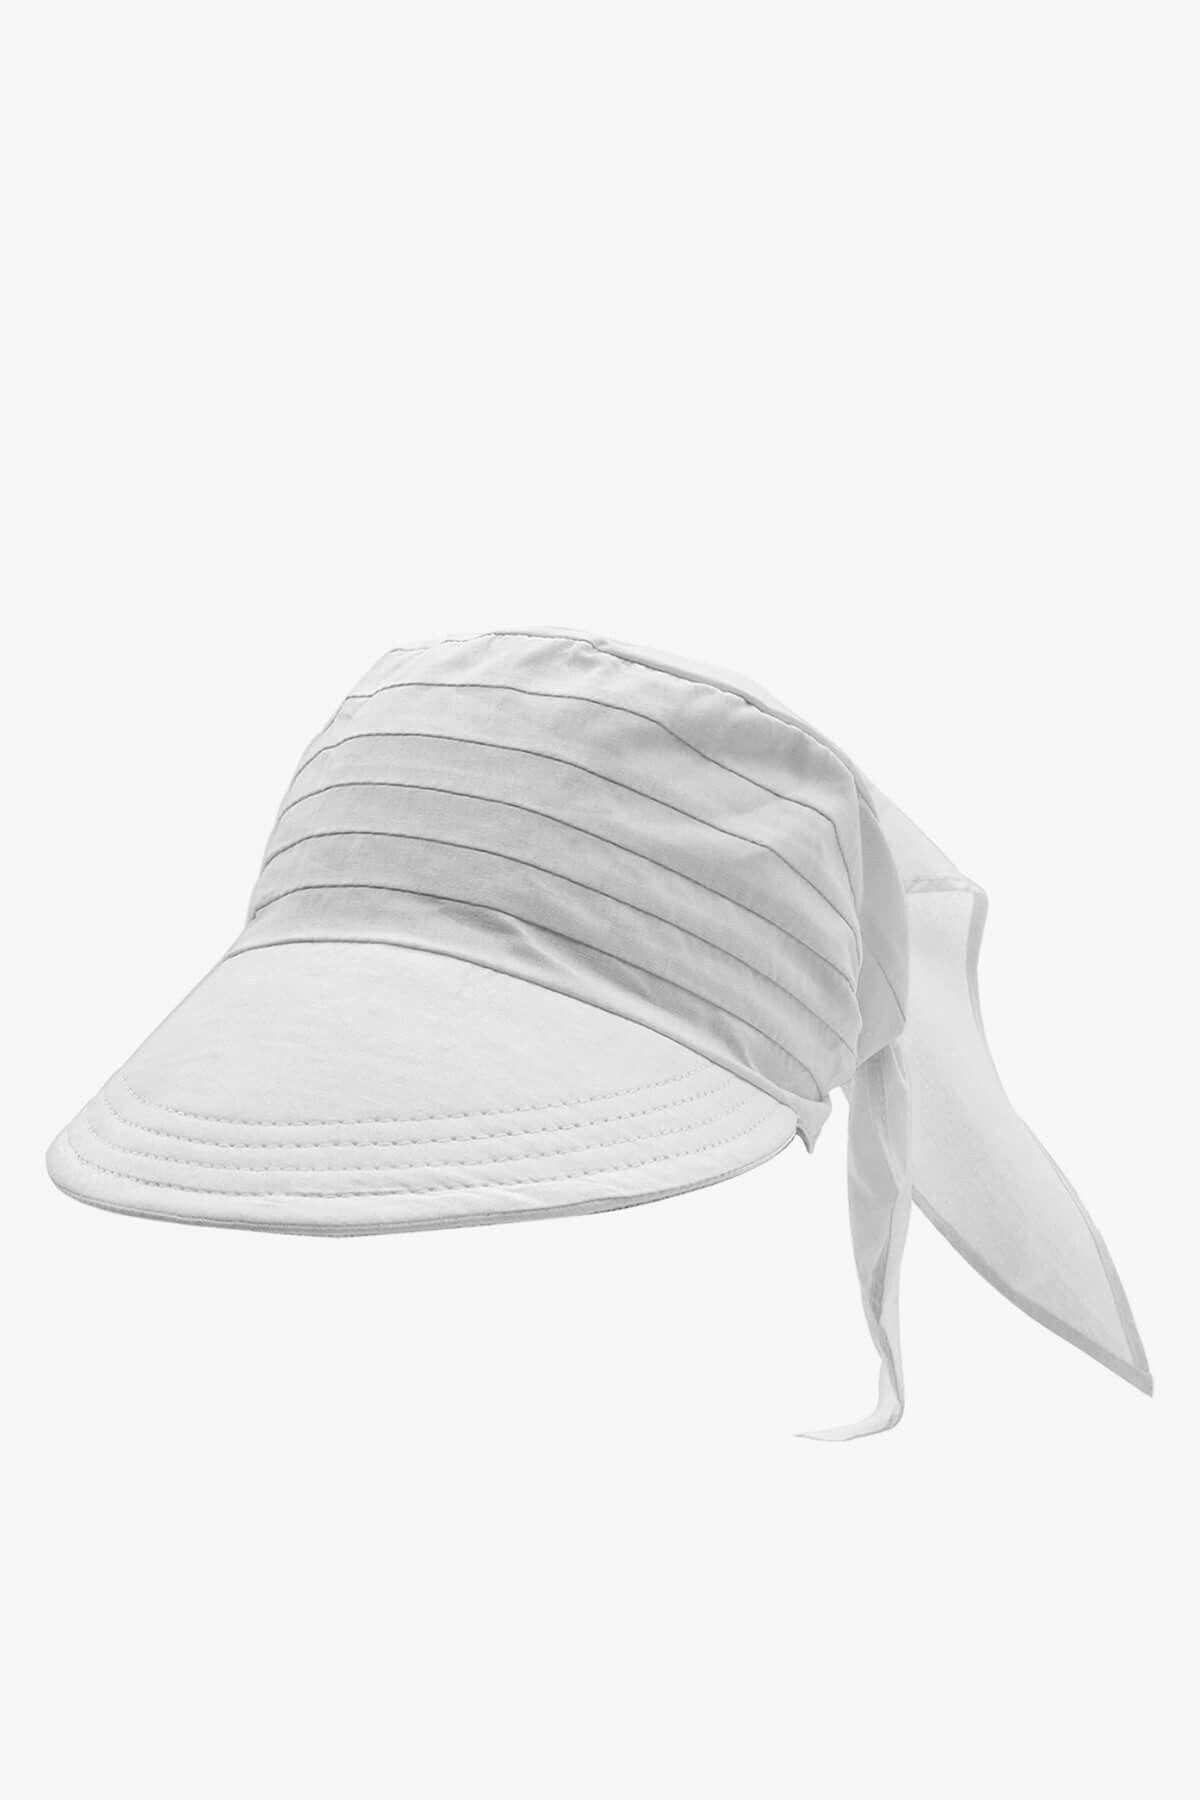 Külah Safari Şapka Bağlamalı Siperli Bandana Plaj Şapkası Beyaz